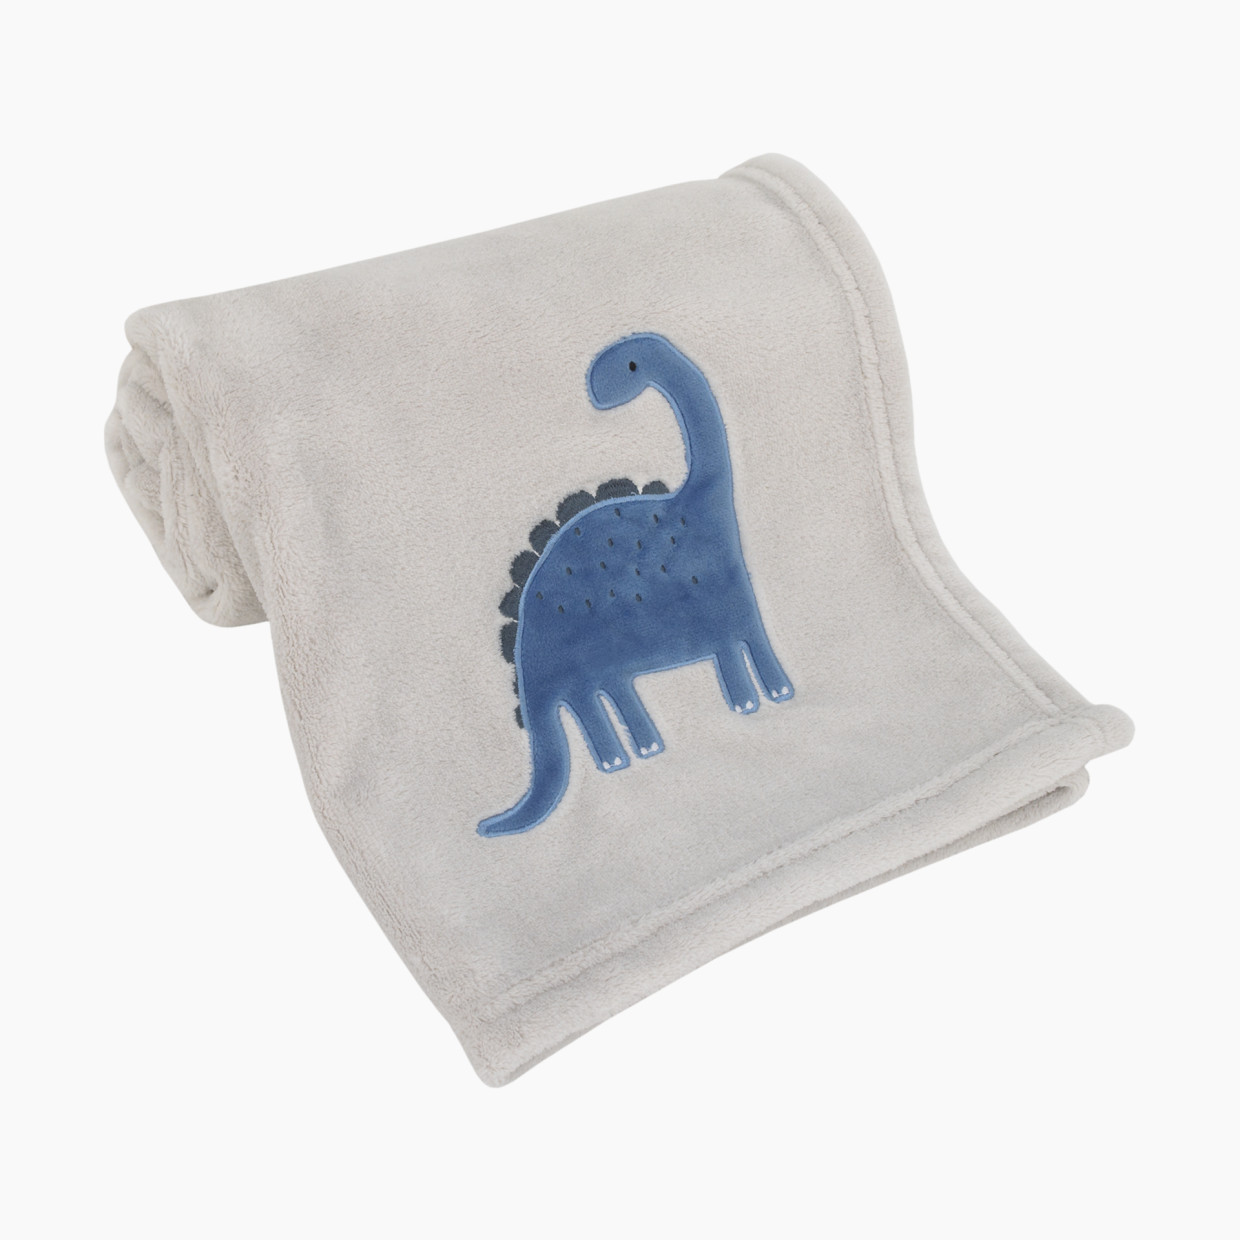 NoJo Baby Plush Baby Blanket - Dino.